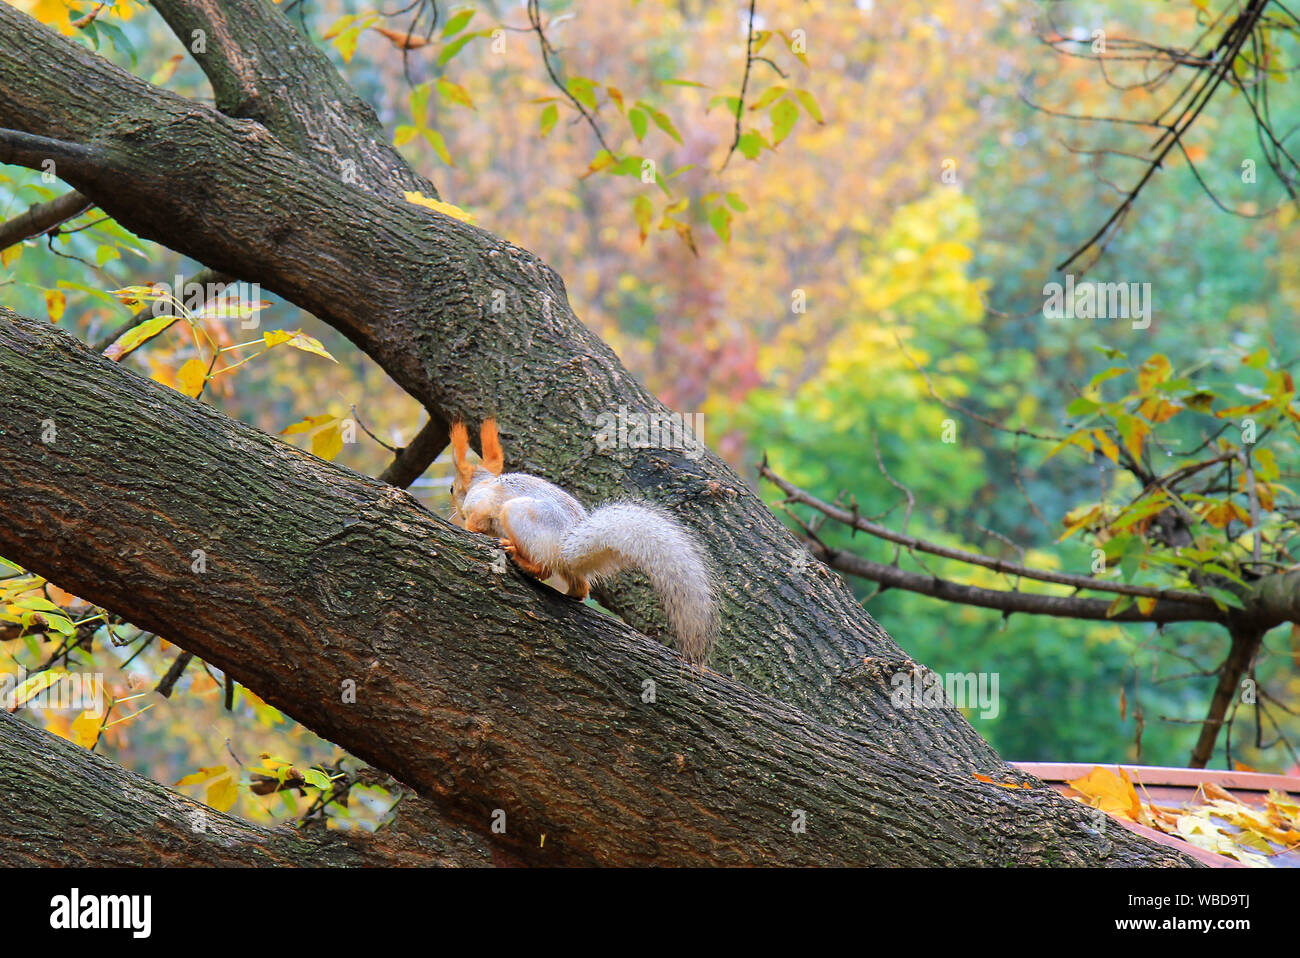 Eine kleine Eichhörnchen mit einem großen Schwanz läuft in Baum in einem Herbst Sophia Park in Uman, Ukraine im Herbst, Herbst Landschaft. Kalender, Postkarte des Stockfoto